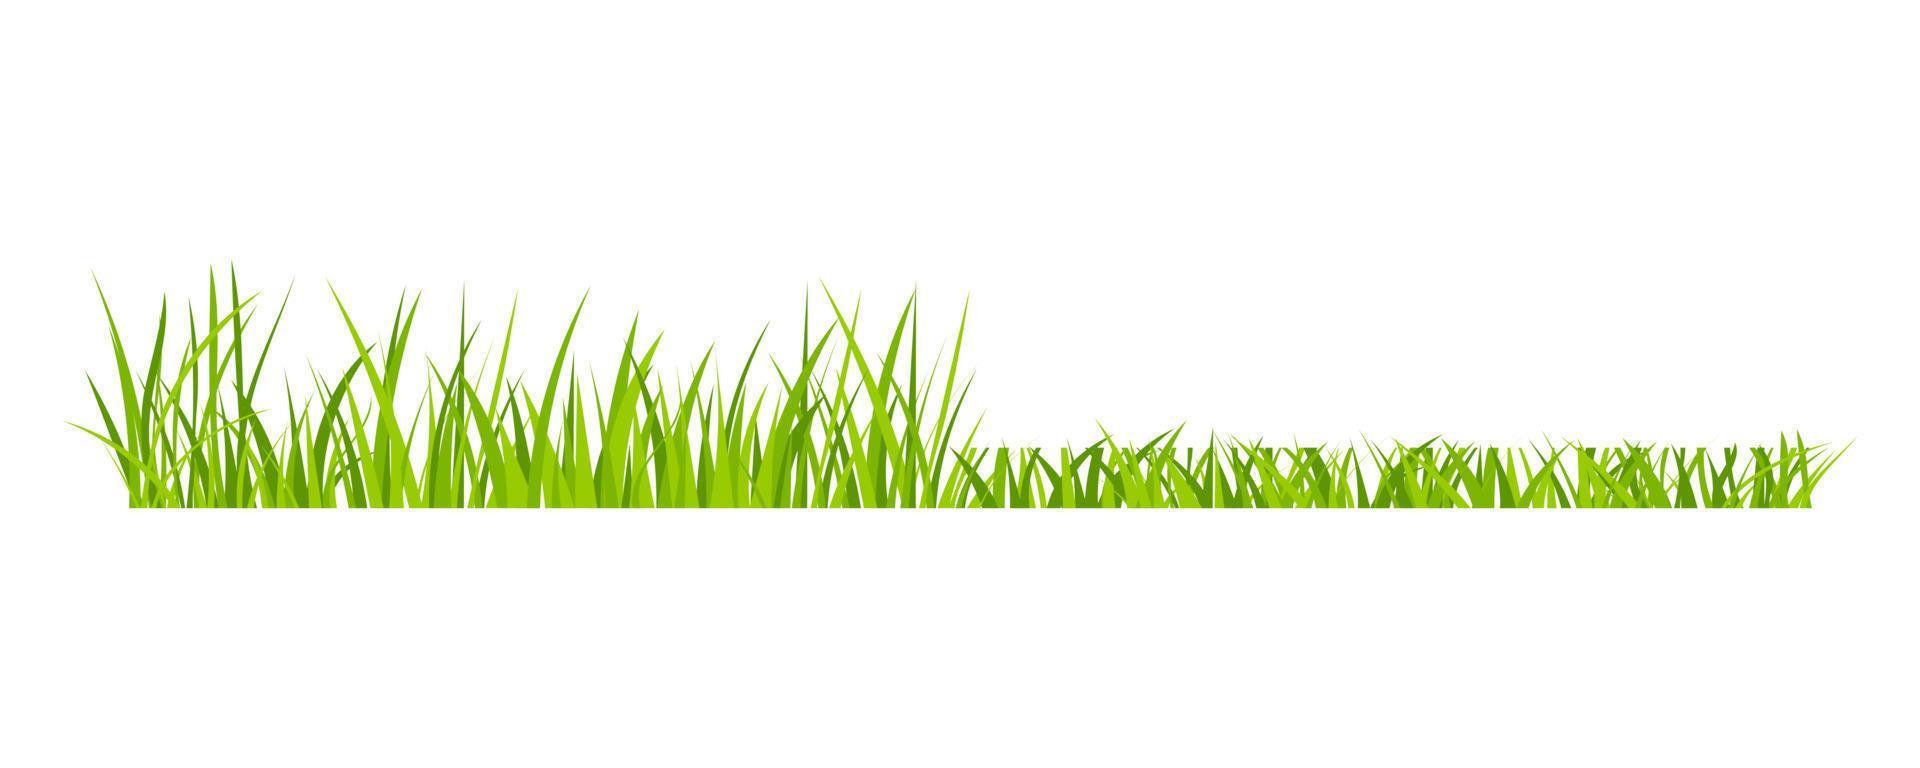 Design-Vektorillustration der grünen Wiesenrasenfeldgrenze flache Art lokalisiert auf weißem Hintergrund. vektor